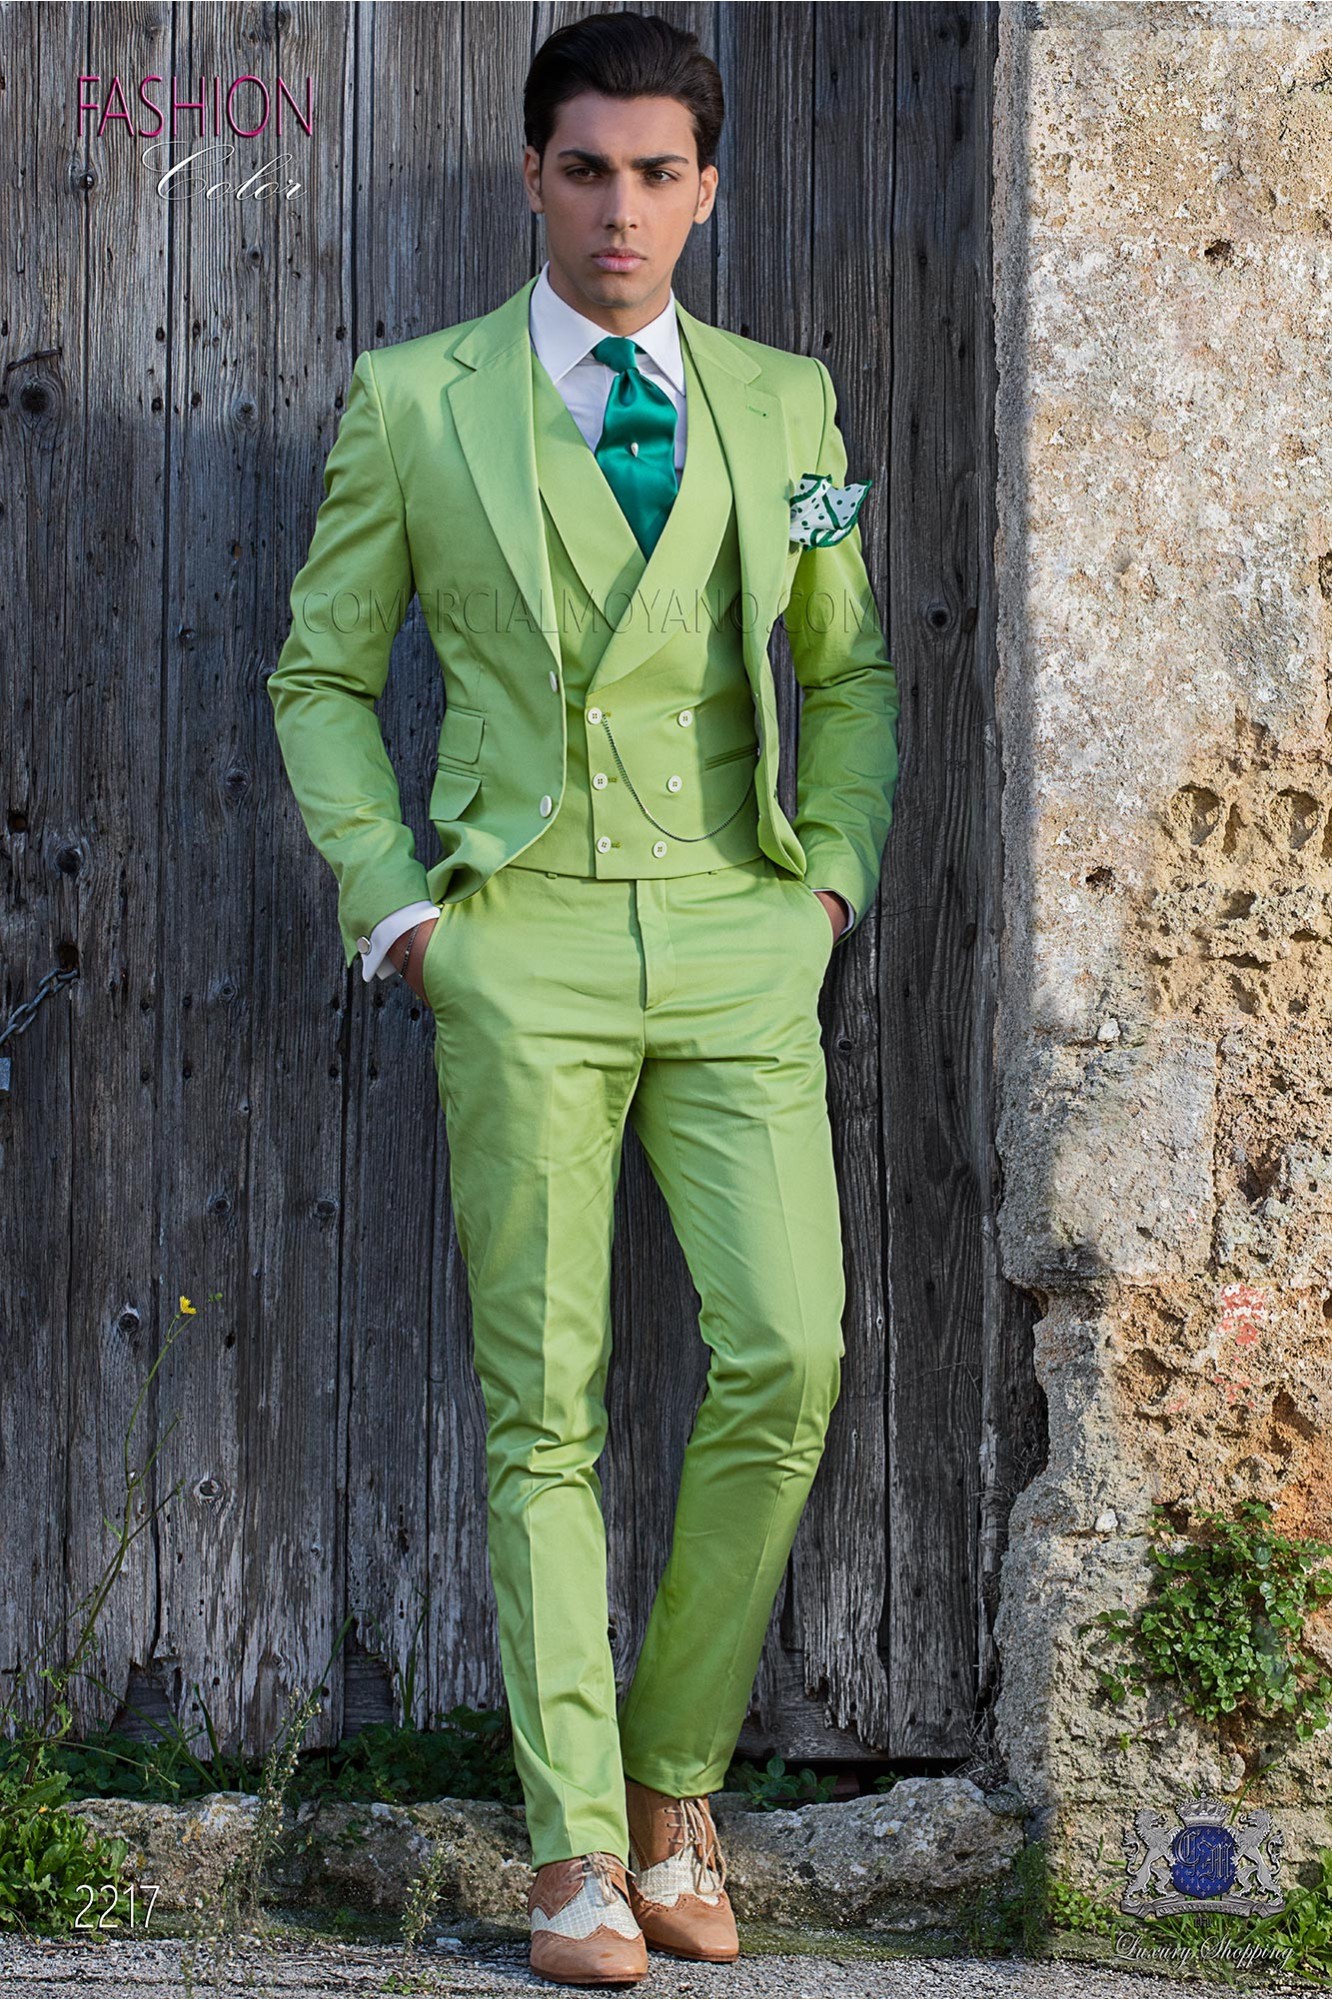 Traje moderno italiano de estilo “Slim”. Tejido color verde 100% algodón modelo: 2217 Mario Moyano colección Hipster